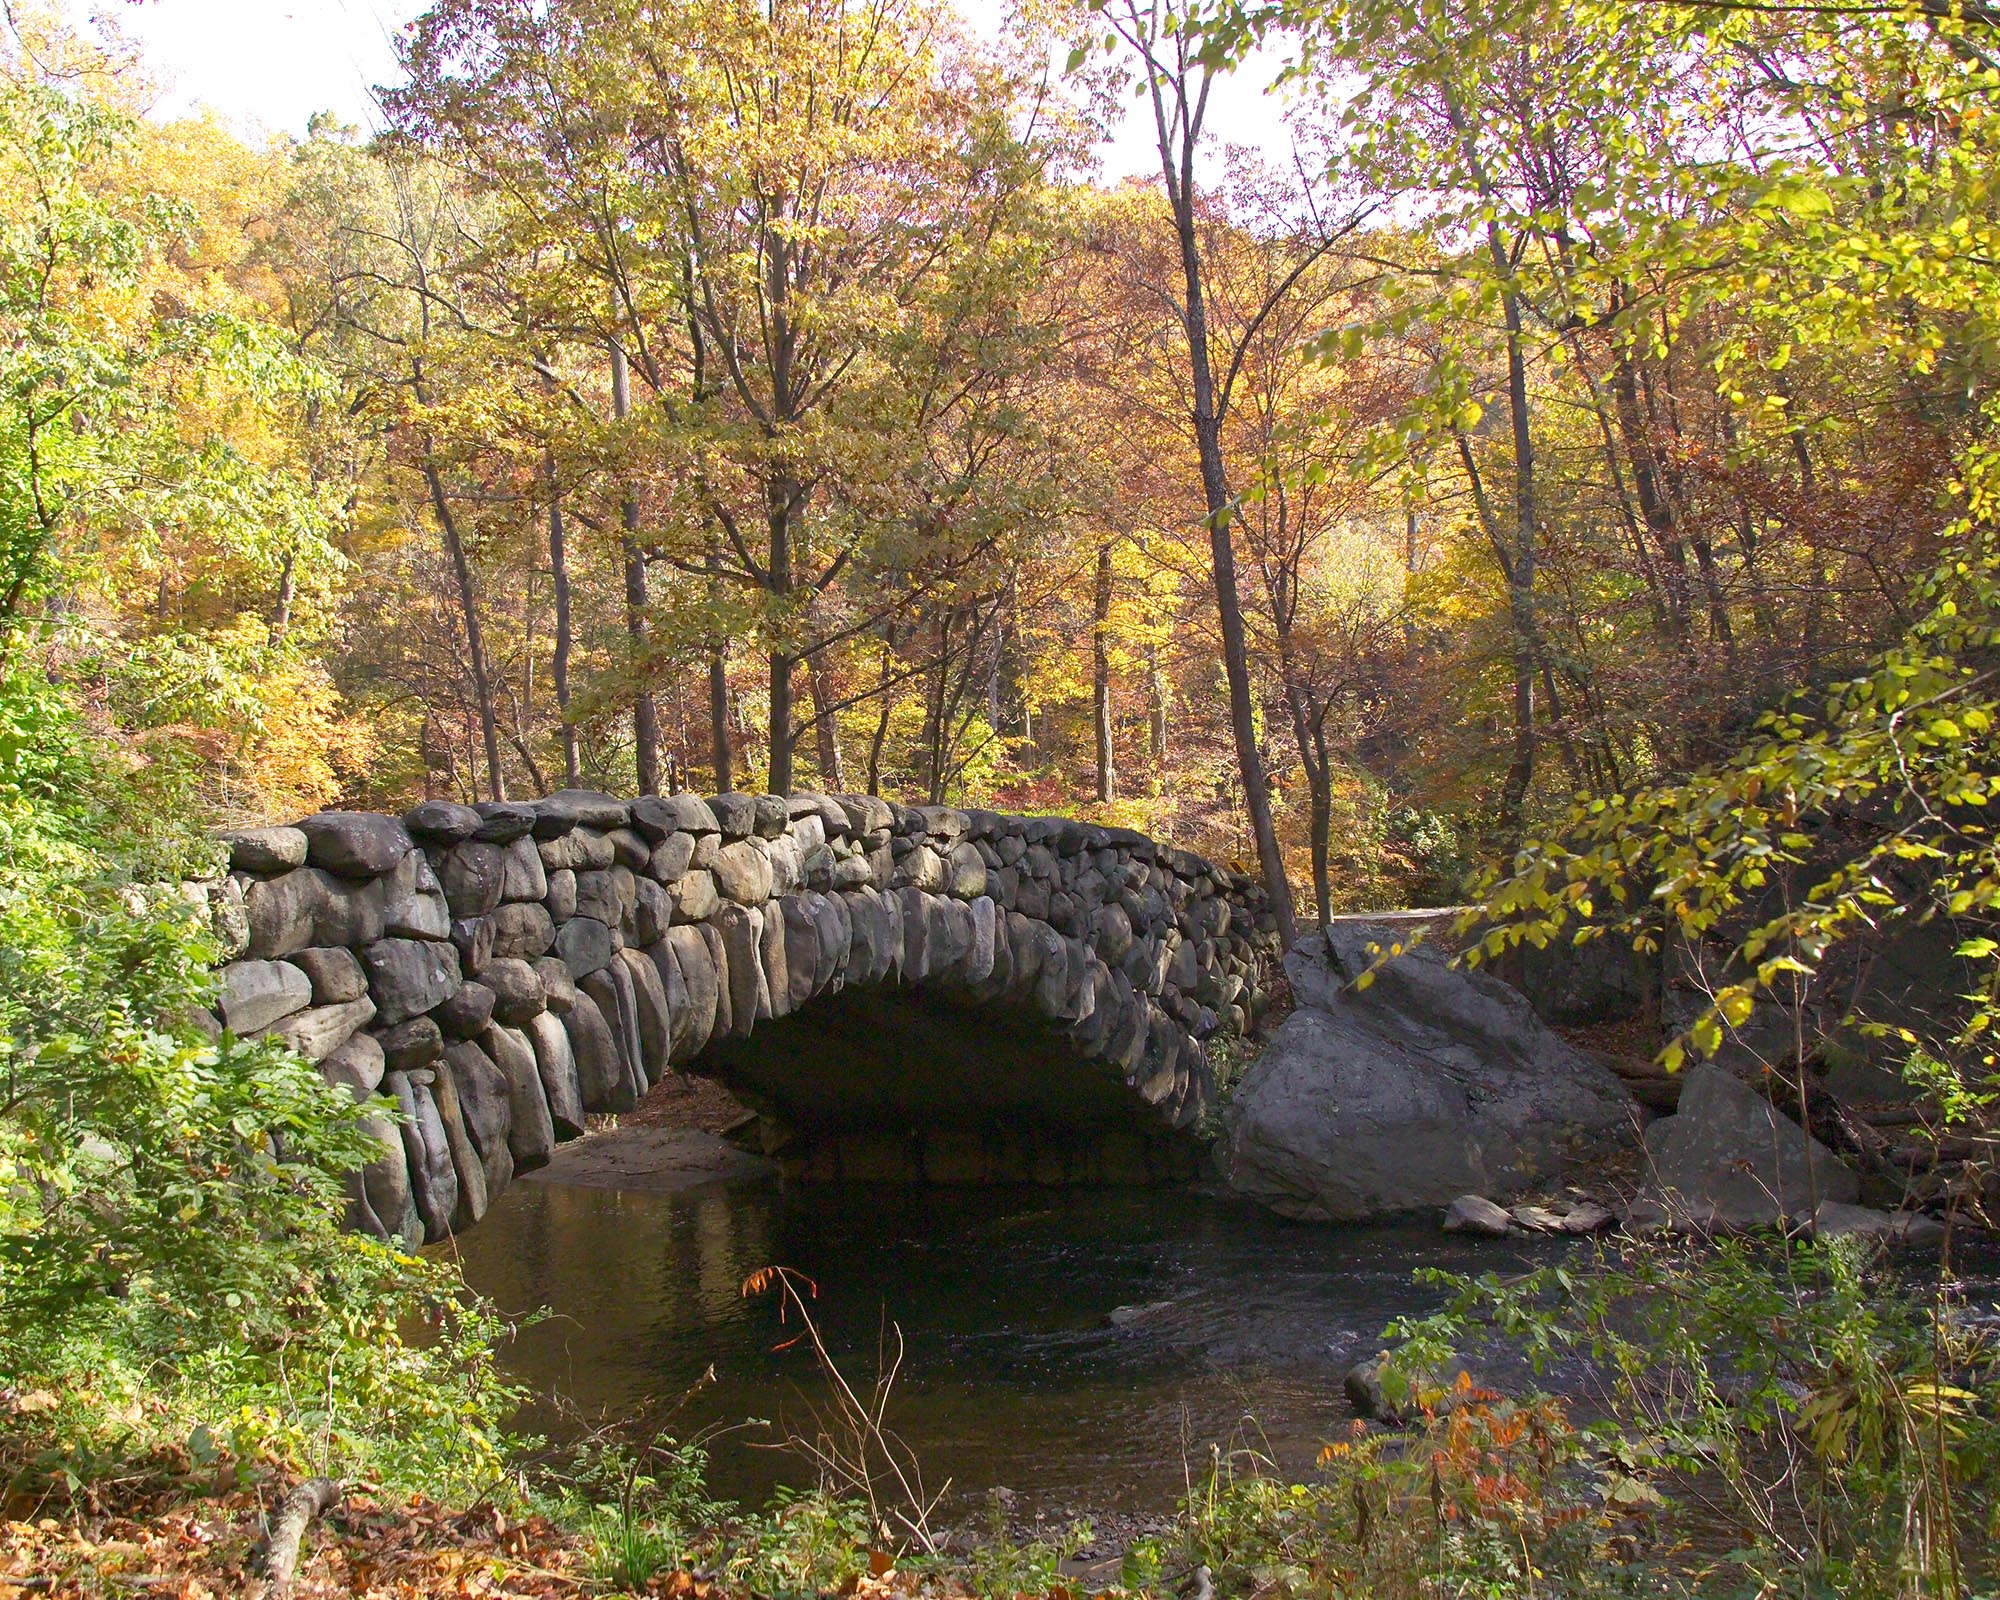 A boulder Bridge over Rock Creek